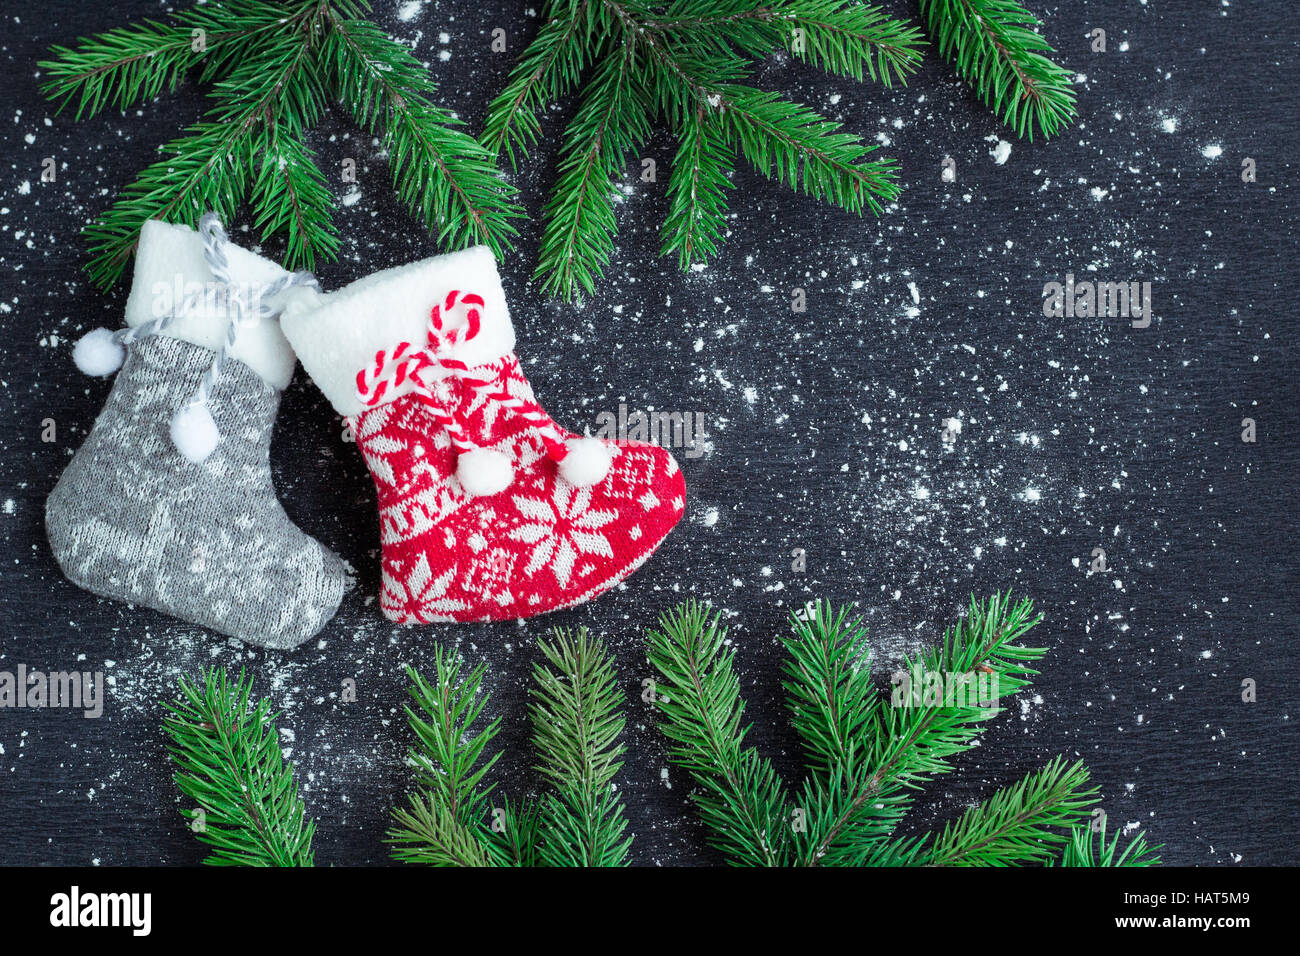 Weihnachten und Neujahr Winter Urlaub snowbound Zusammensetzung von grauen und roten Strümpfen auf schwarzen Raum Hintergrund mit grünen Tannenzweigen Baum Stockfoto